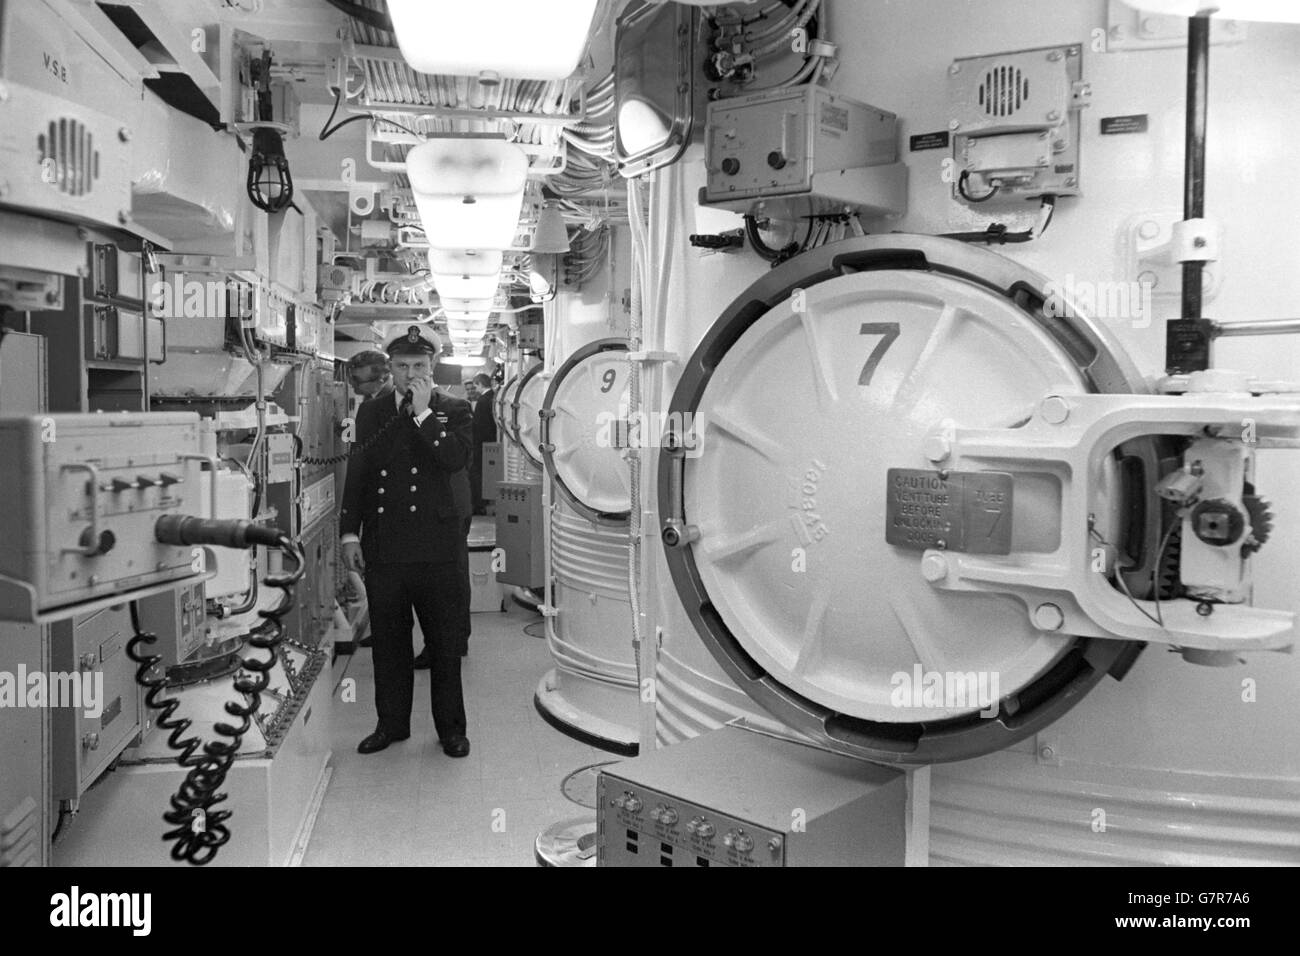 Militare - Polaris Submarine - risoluzione HMS - Vickers cantiere, Barrow-in-Furness. 350 milioni, si uniranno alla Royal Navy entro il 1970. Foto Stock